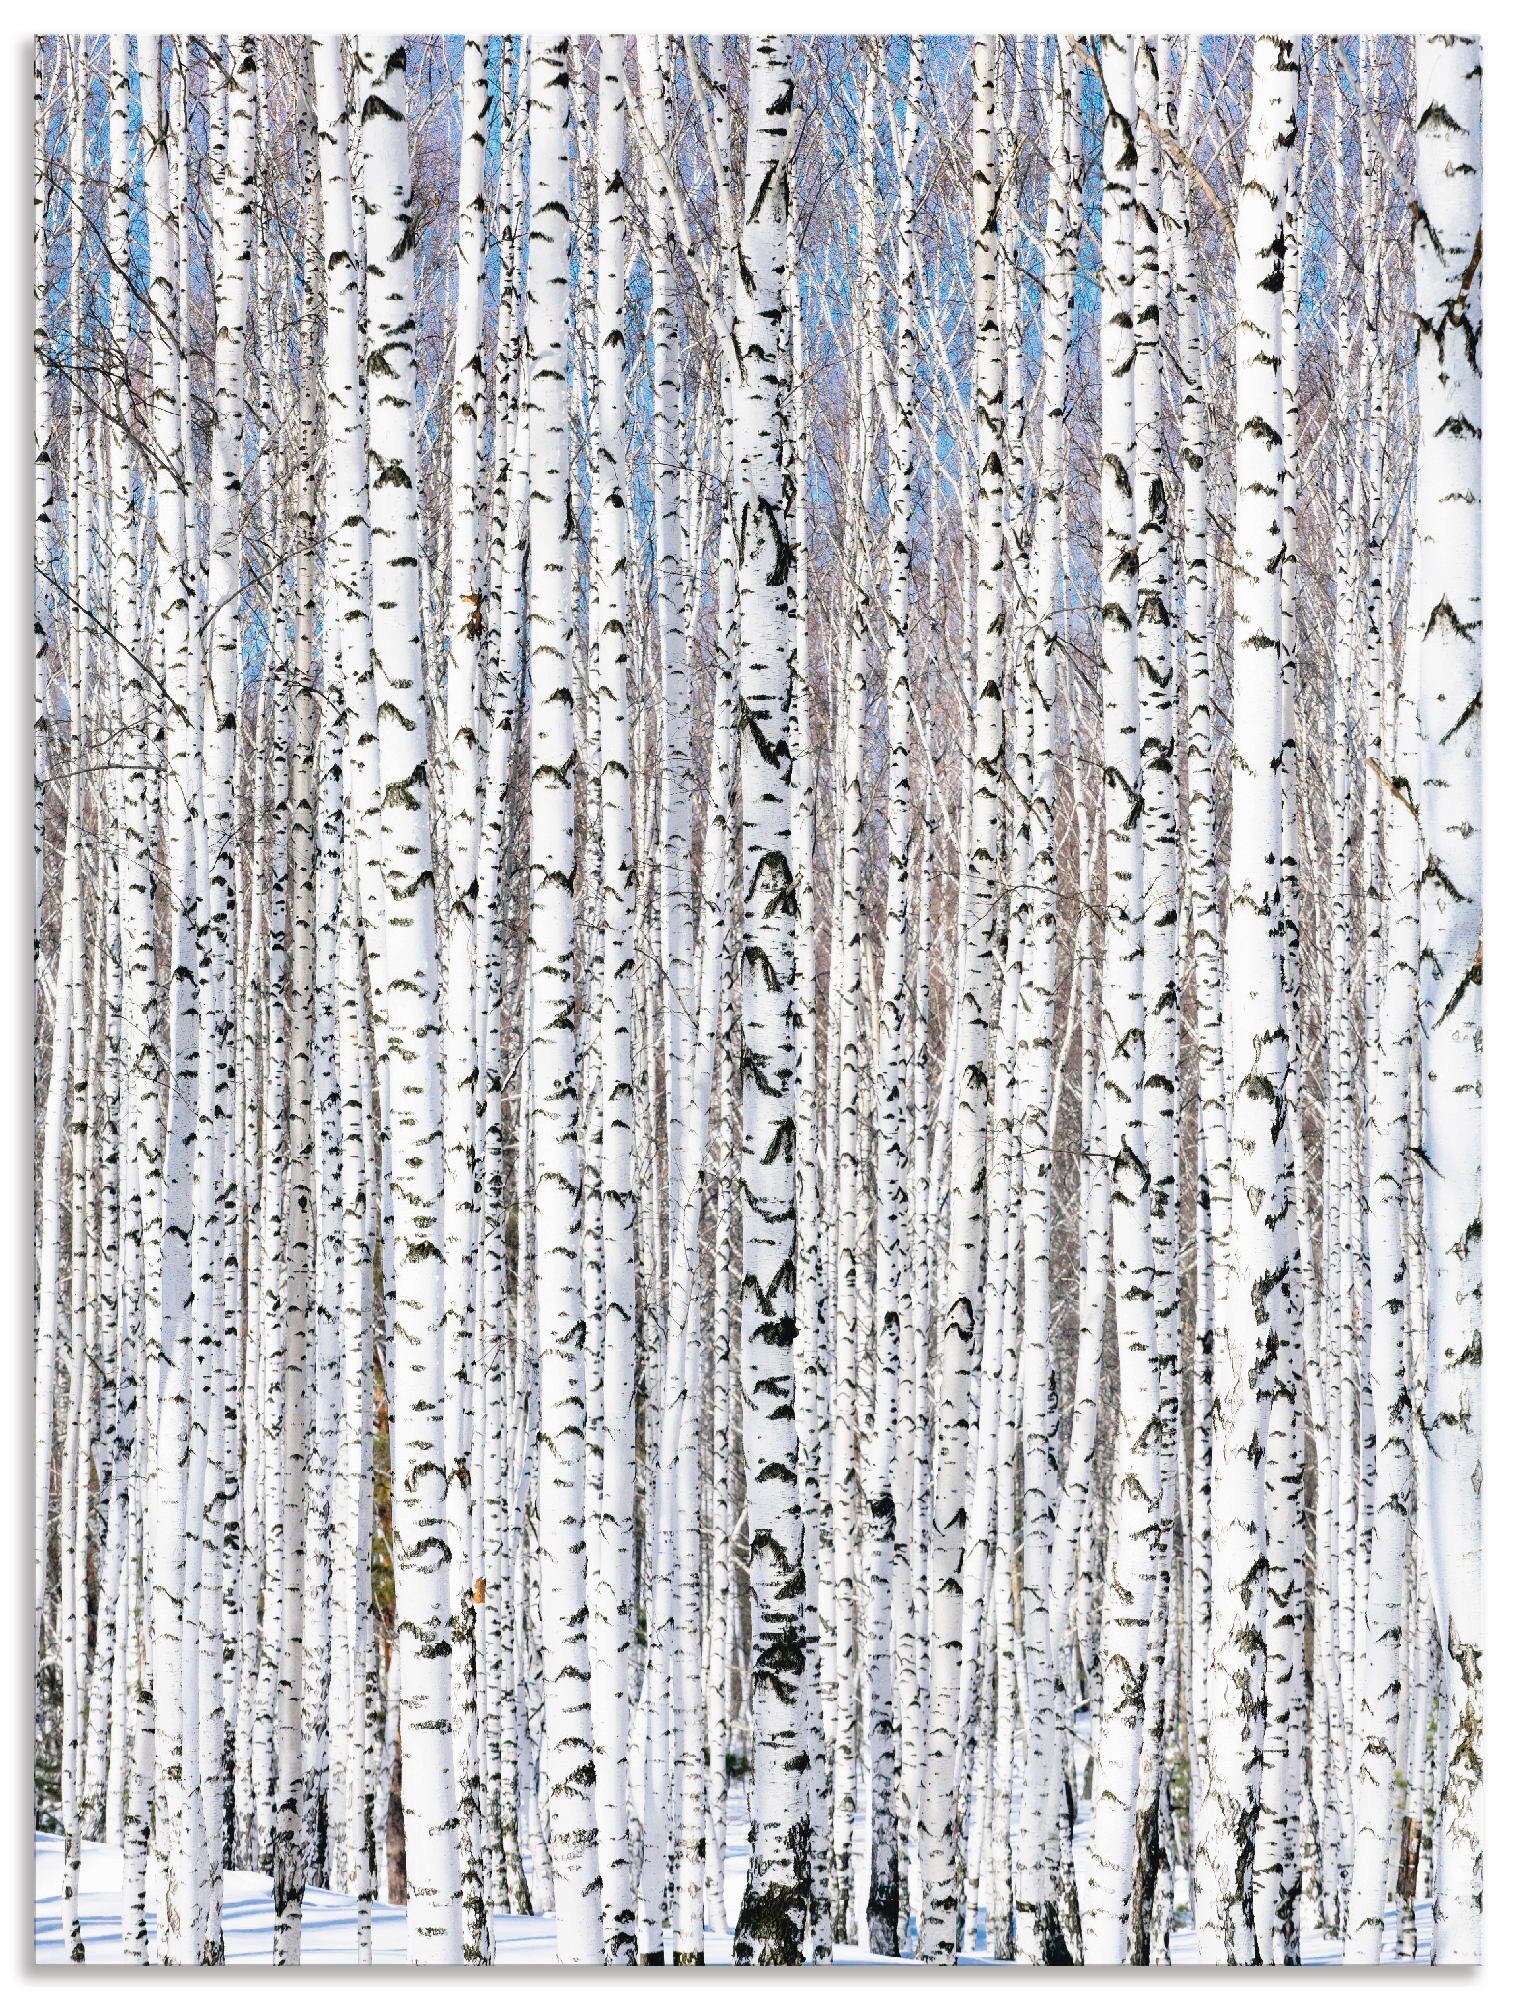 Artland Artprint Winter berkenbos winter sereniteit in vele afmetingen & productsoorten - artprint van aluminium / artprint voor buiten, artprint op linnen, poster, muursticker / w